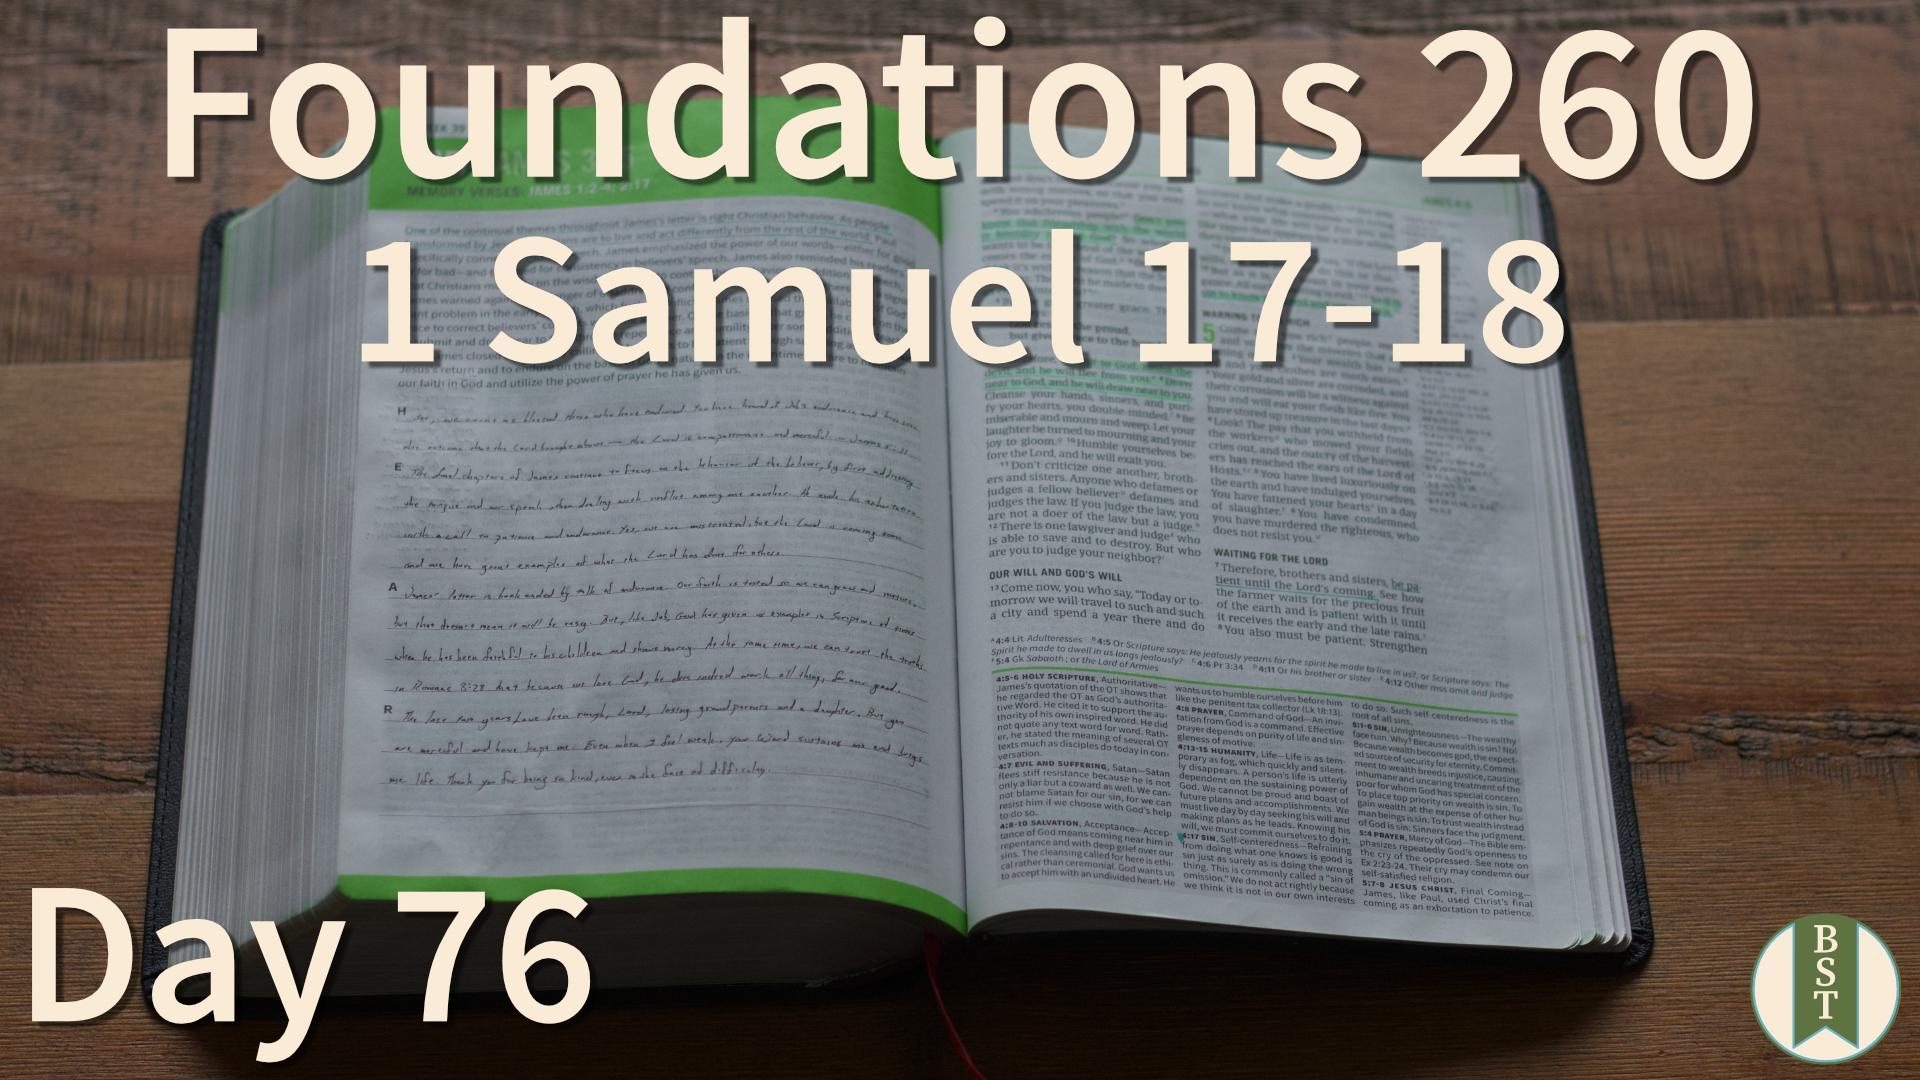 F260 Day 76: 1 Samuel 17-18